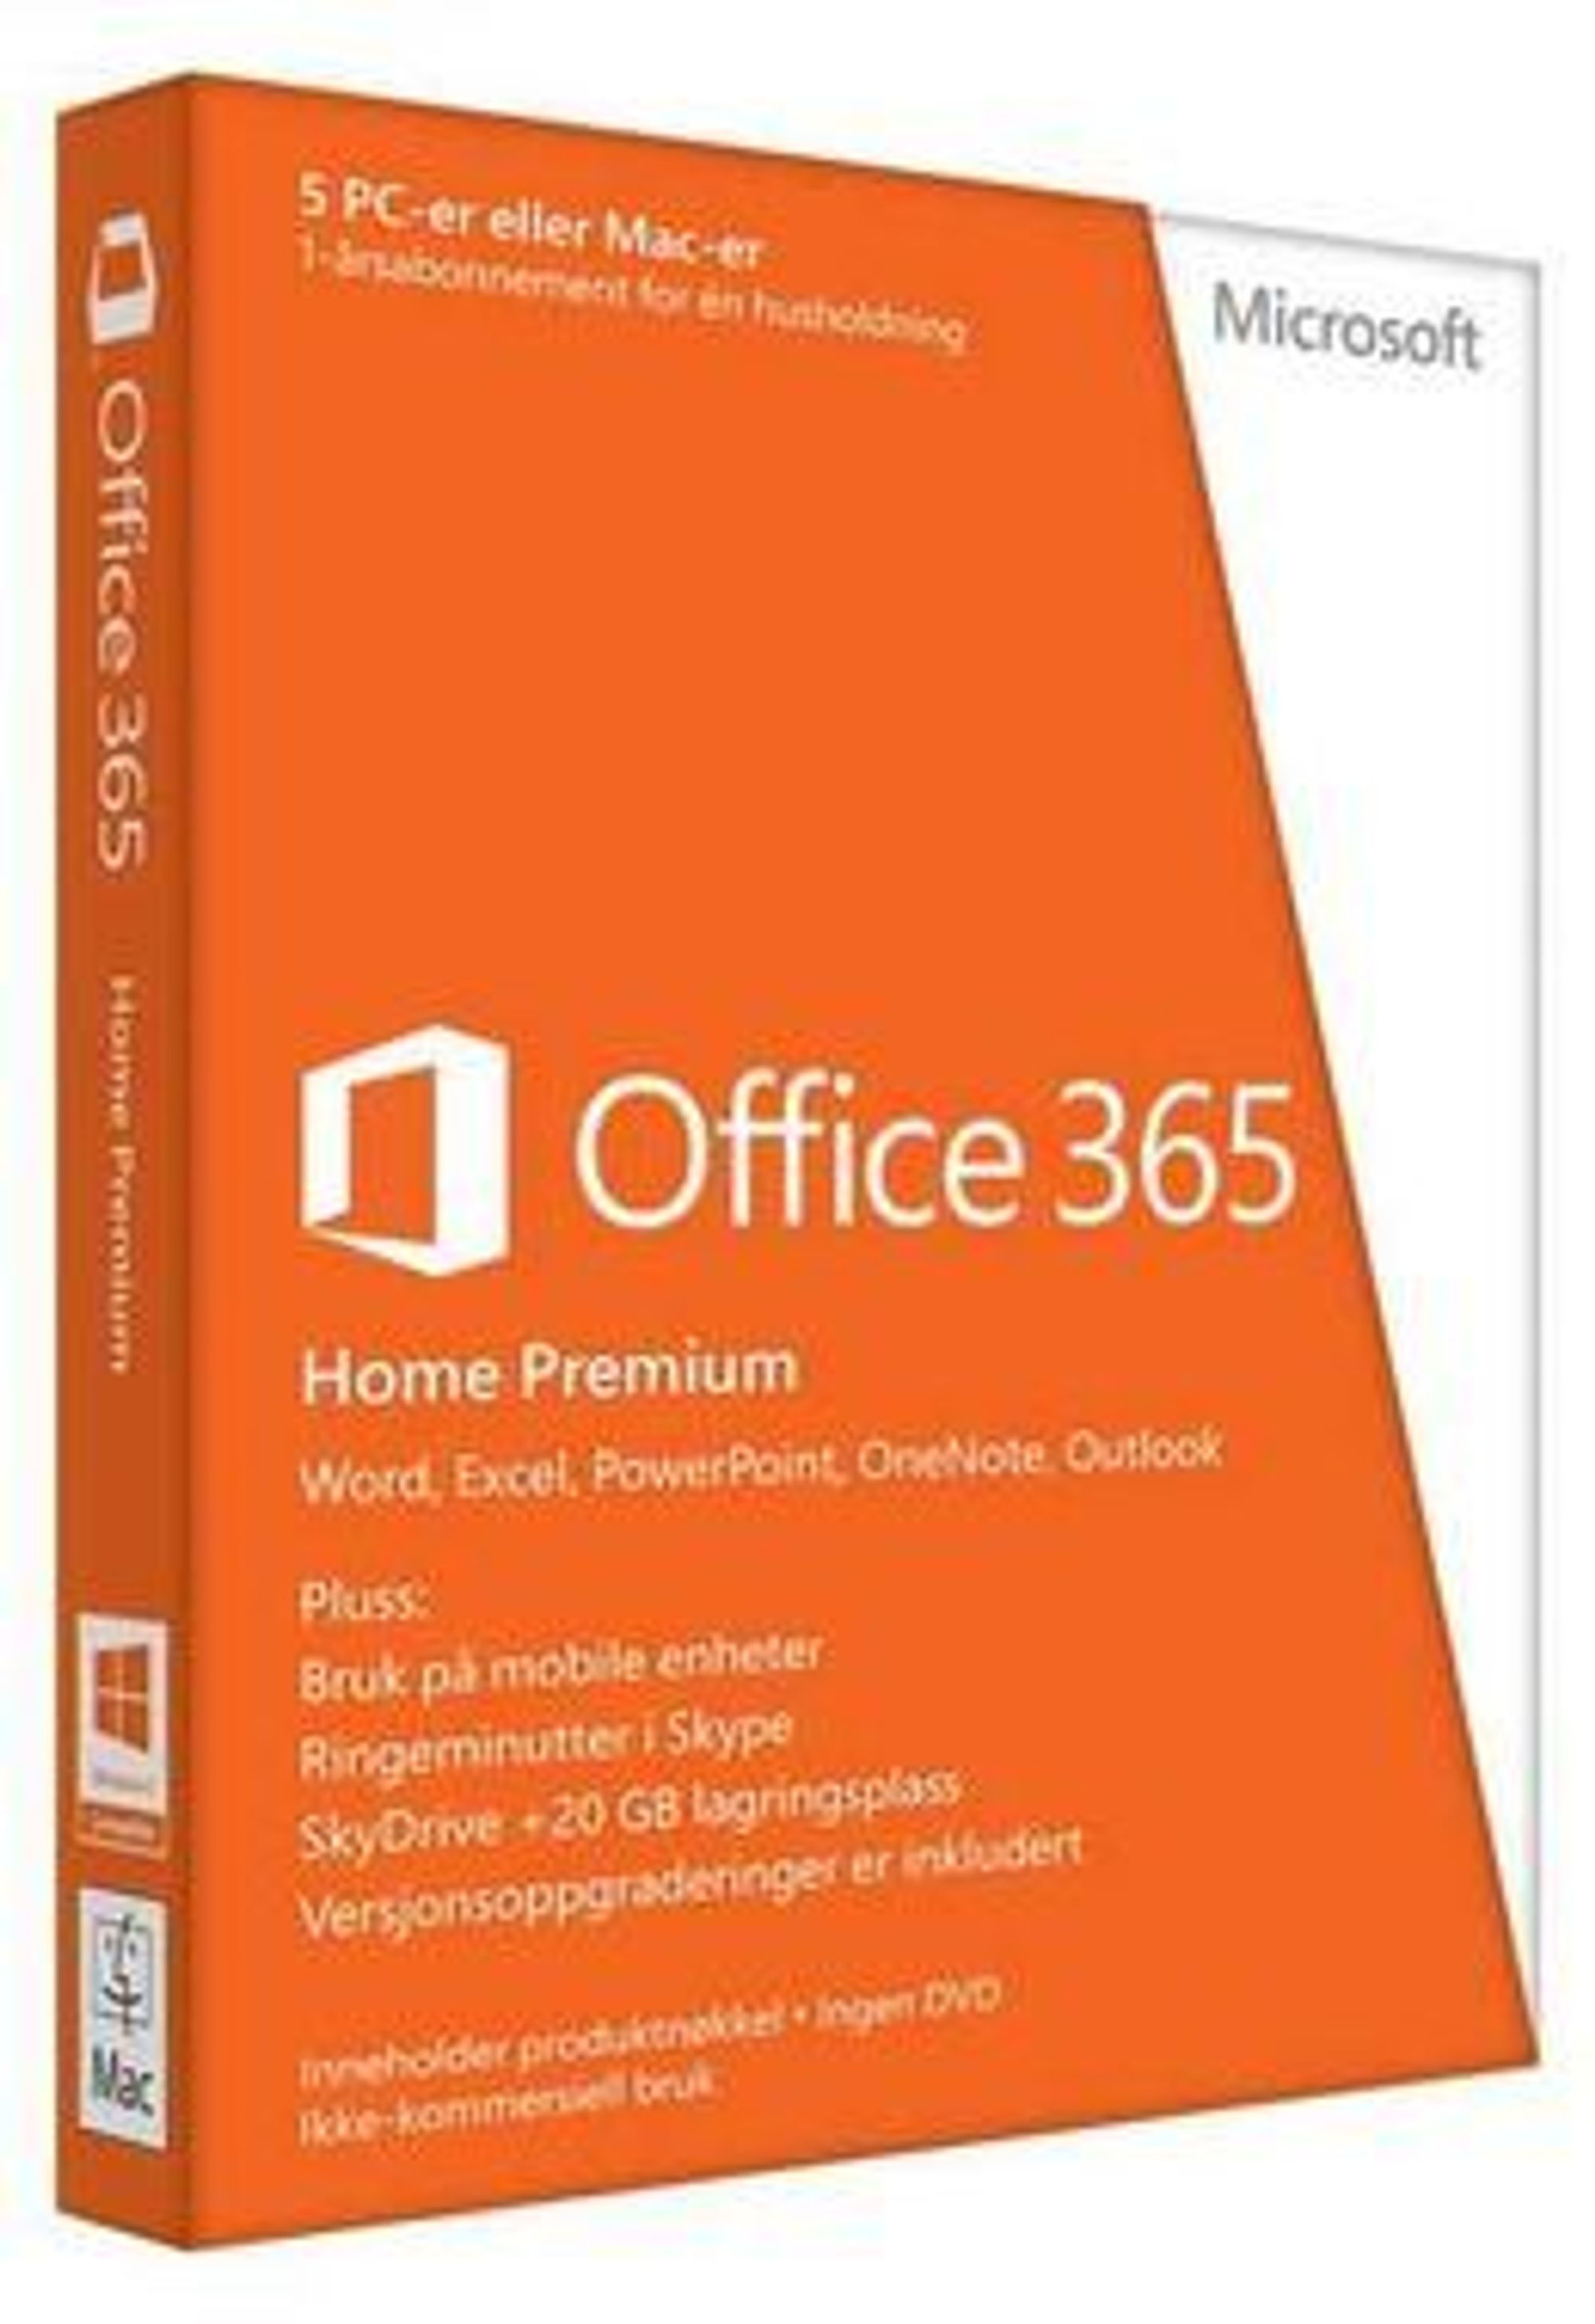 Office 365 Home Premium tilbys også på boks. Legg merke til teksten helt nederst: Inneholder produktnøkkel, ingen DVD.